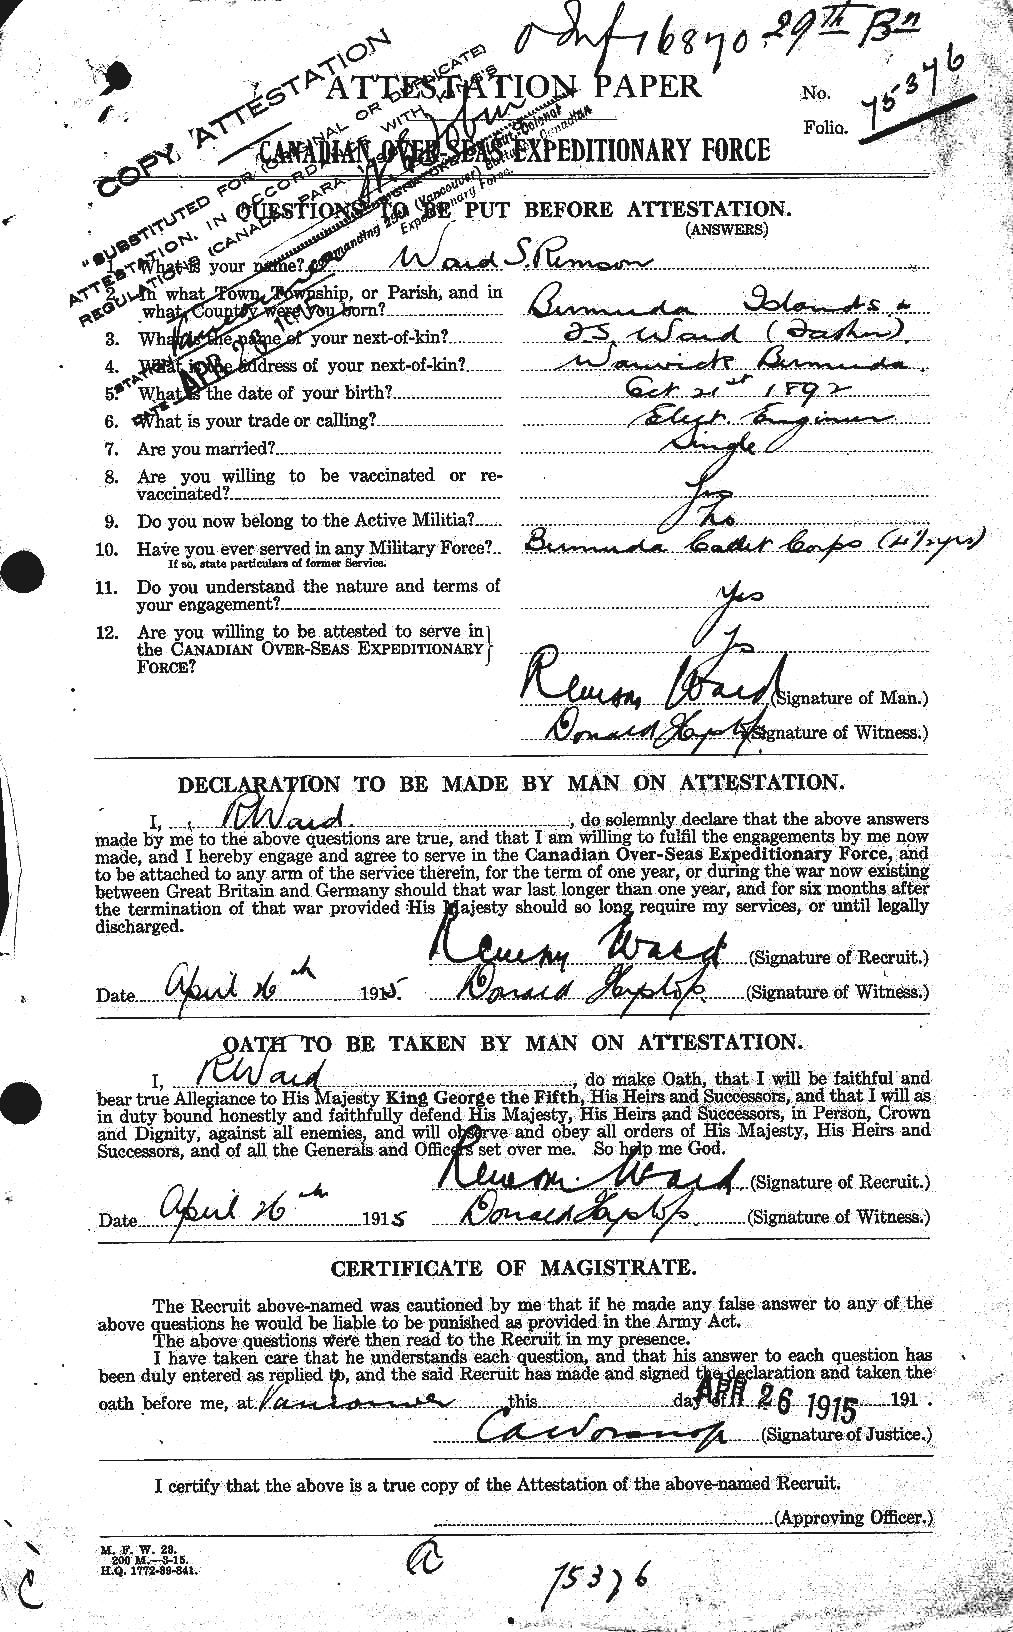 Dossiers du Personnel de la Première Guerre mondiale - CEC 659645a